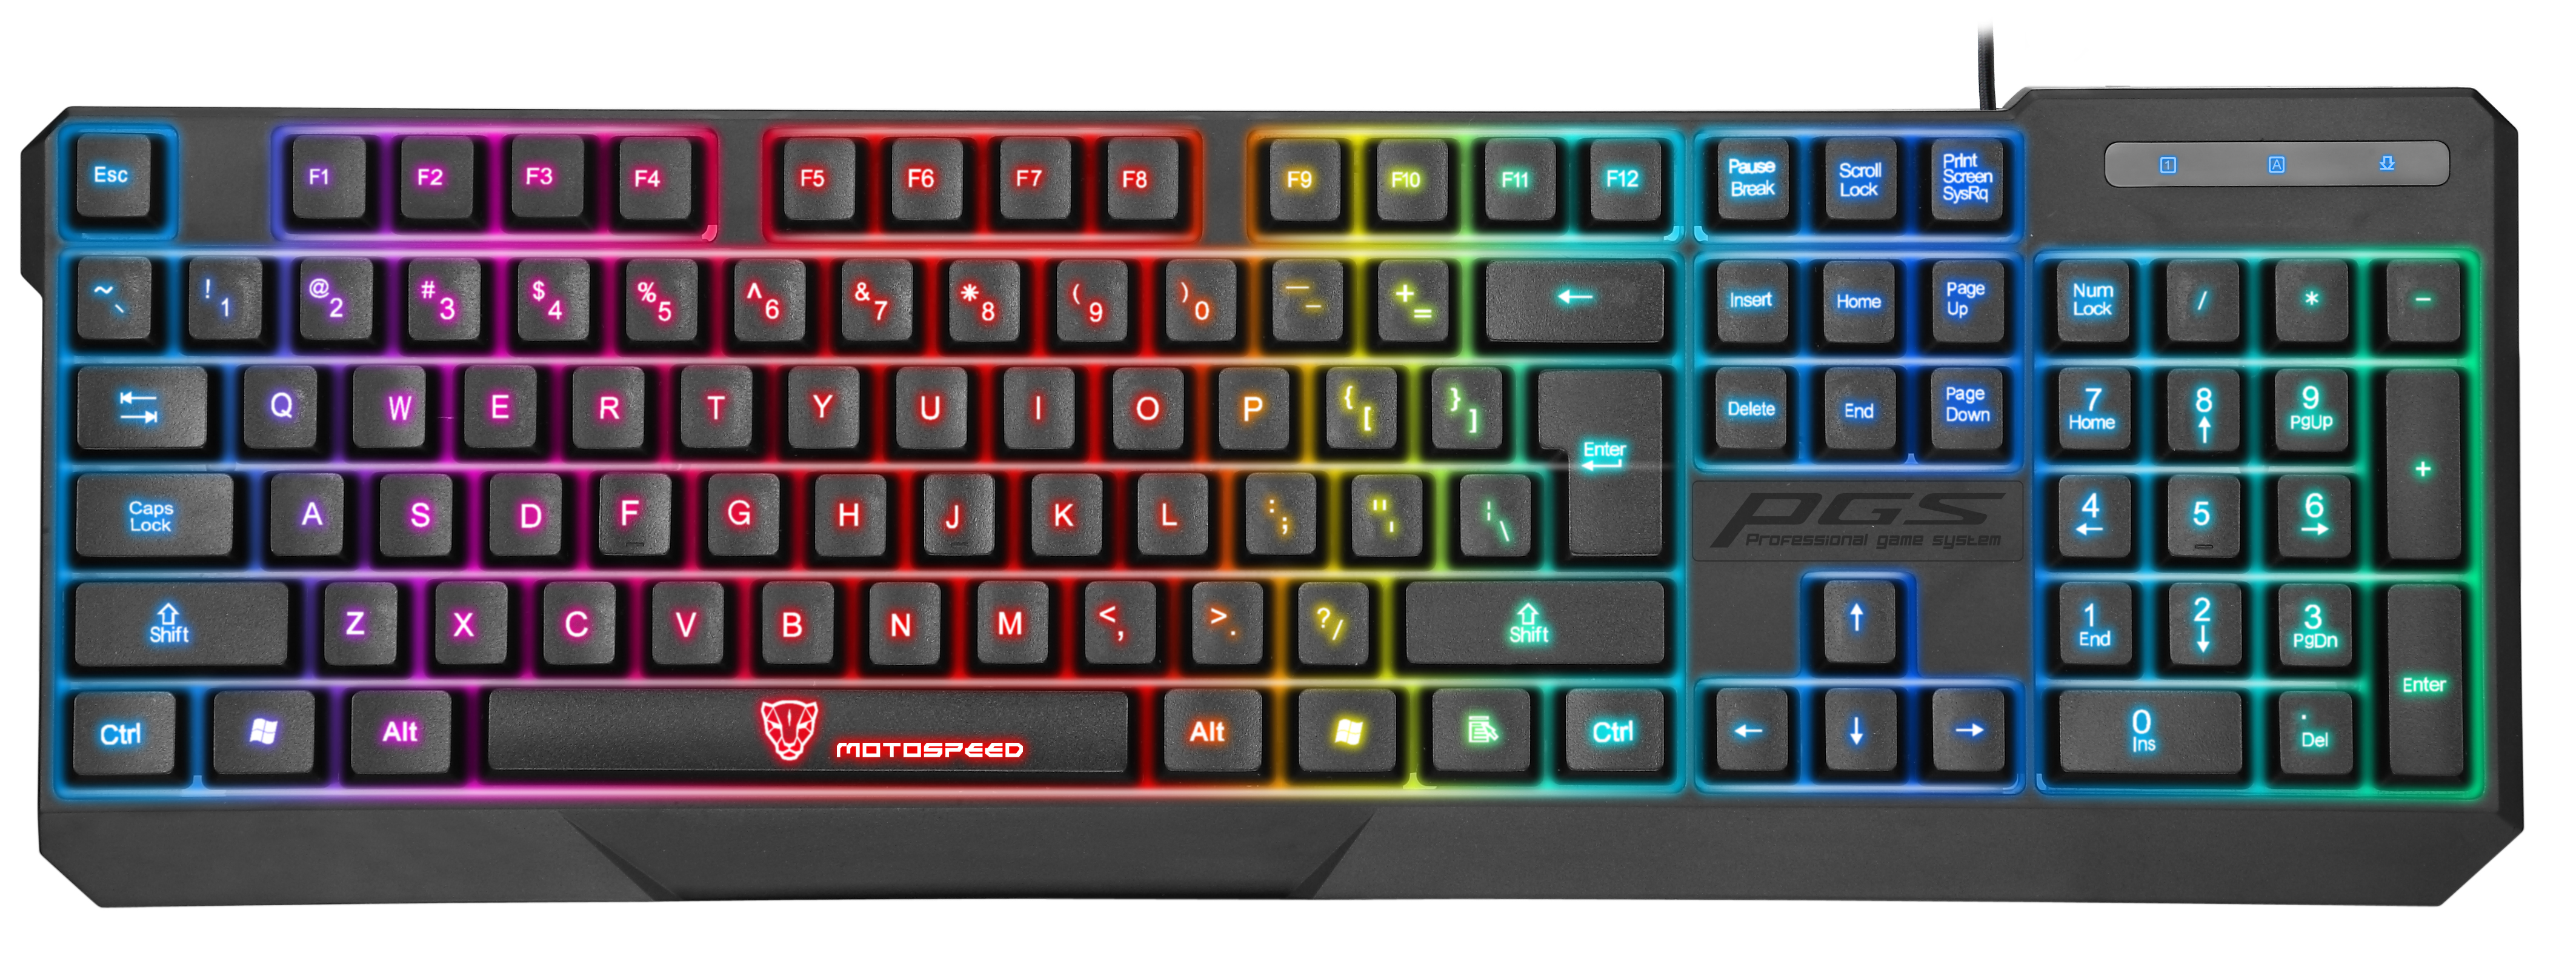 Motospeed K70L USB Wired Seven Color Backlit Gaming Keyboard   Black